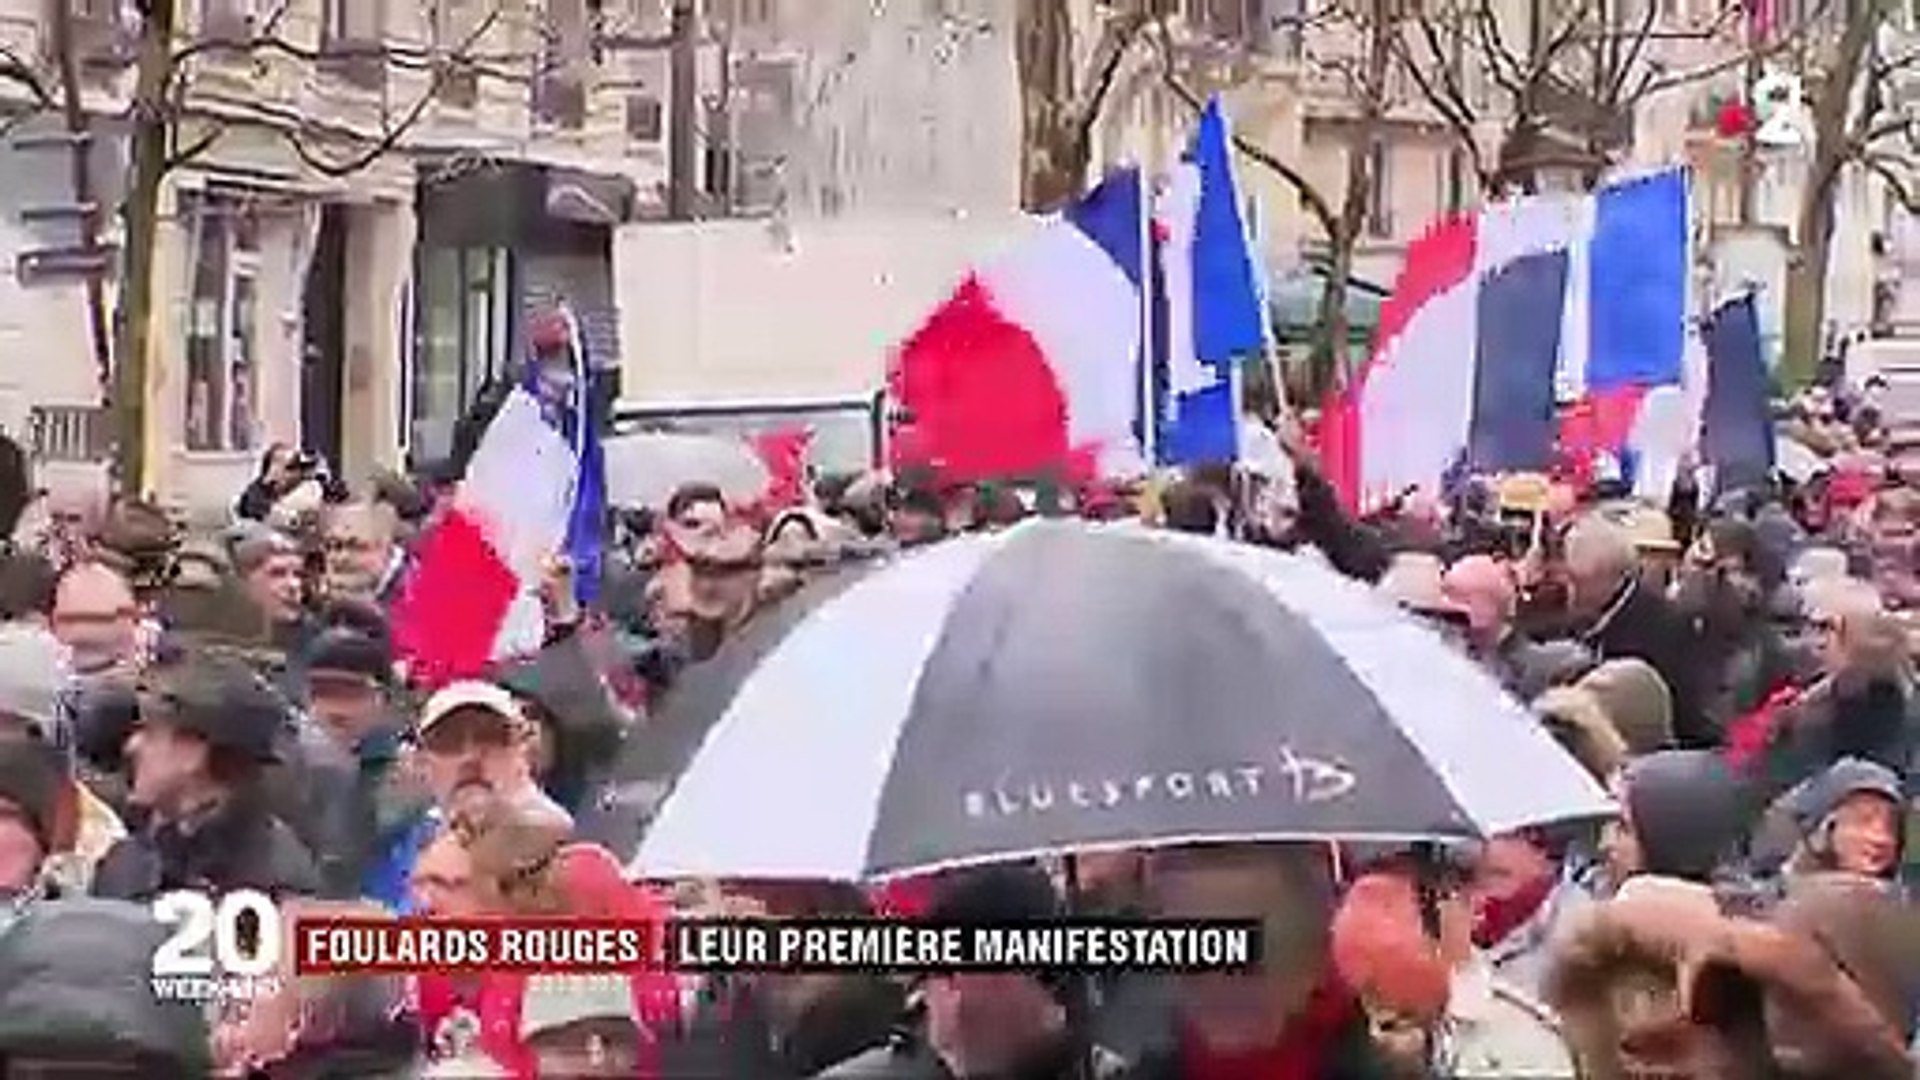 Foulards rouges" : les premiers manifestants dans Paris - Vidéo Dailymotion